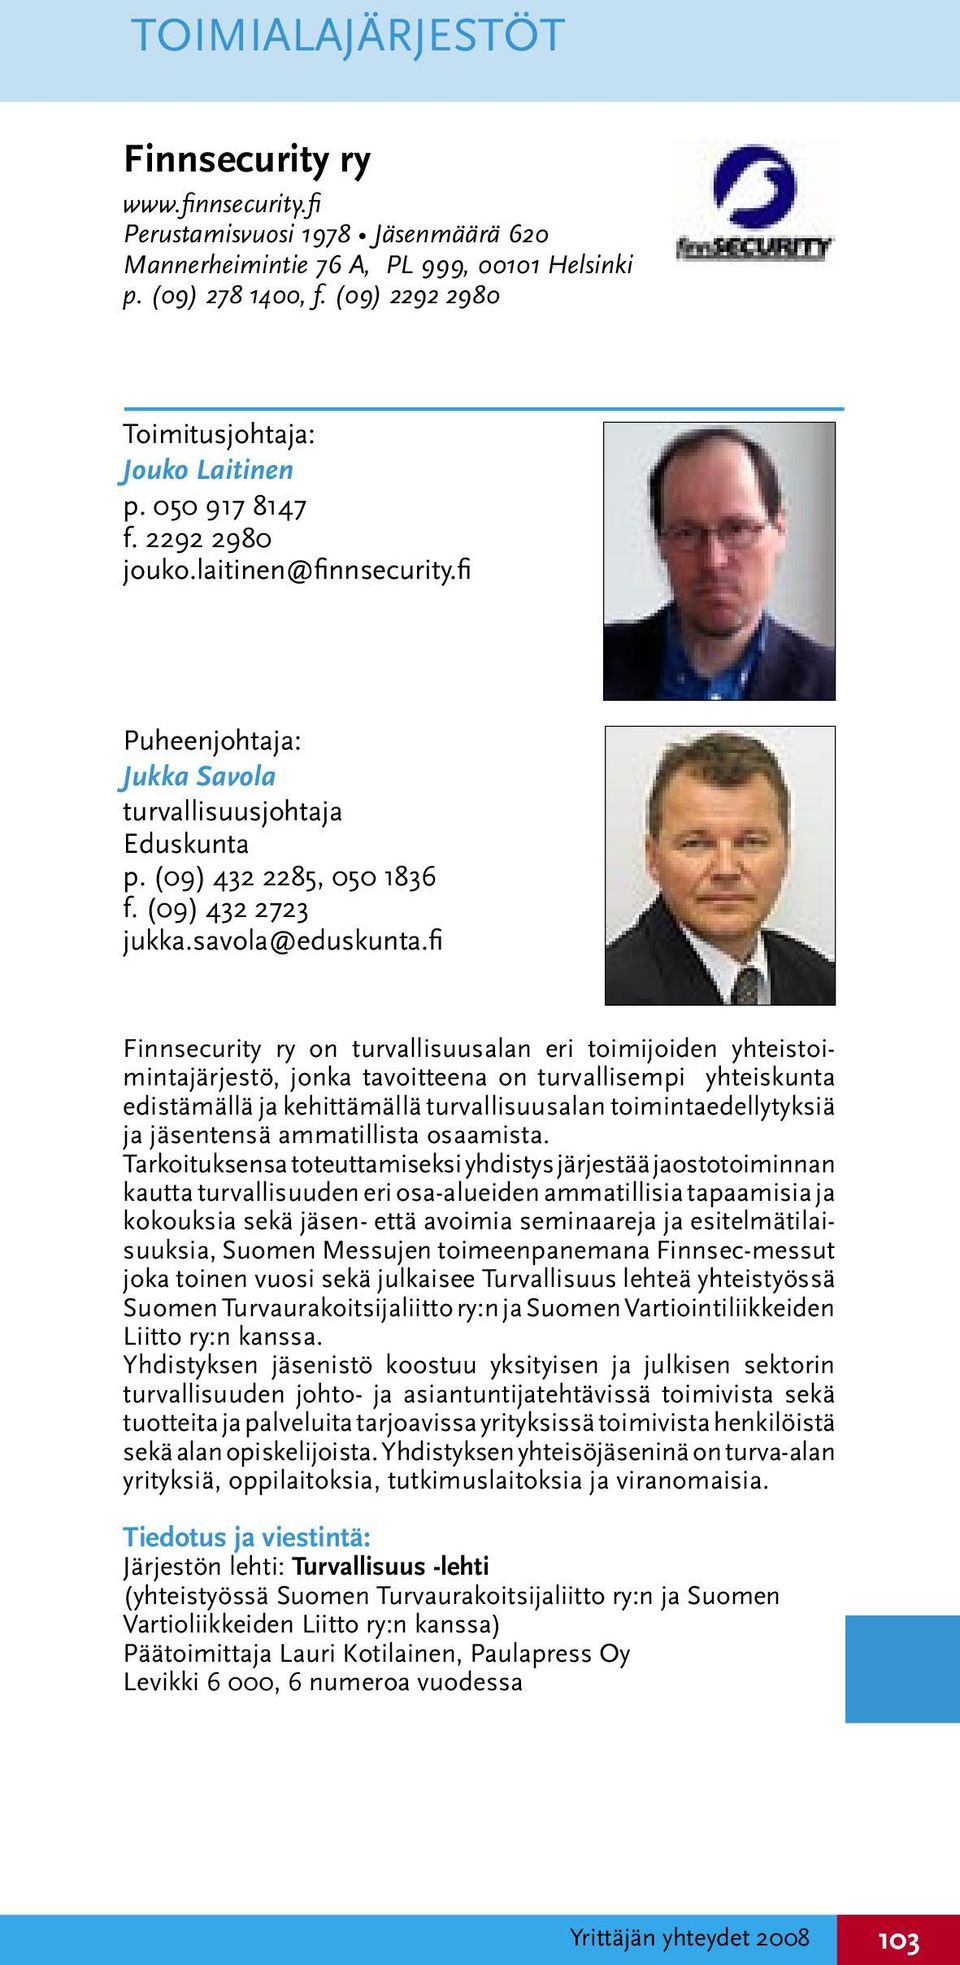 fi Finnsecurity ry on turvallisuusalan eri toimijoiden yhteistoimintajärjestö, jonka tavoitteena on turvallisempi yhteiskunta edistämällä ja kehittämällä turvallisuusalan toimintaedellytyksiä ja